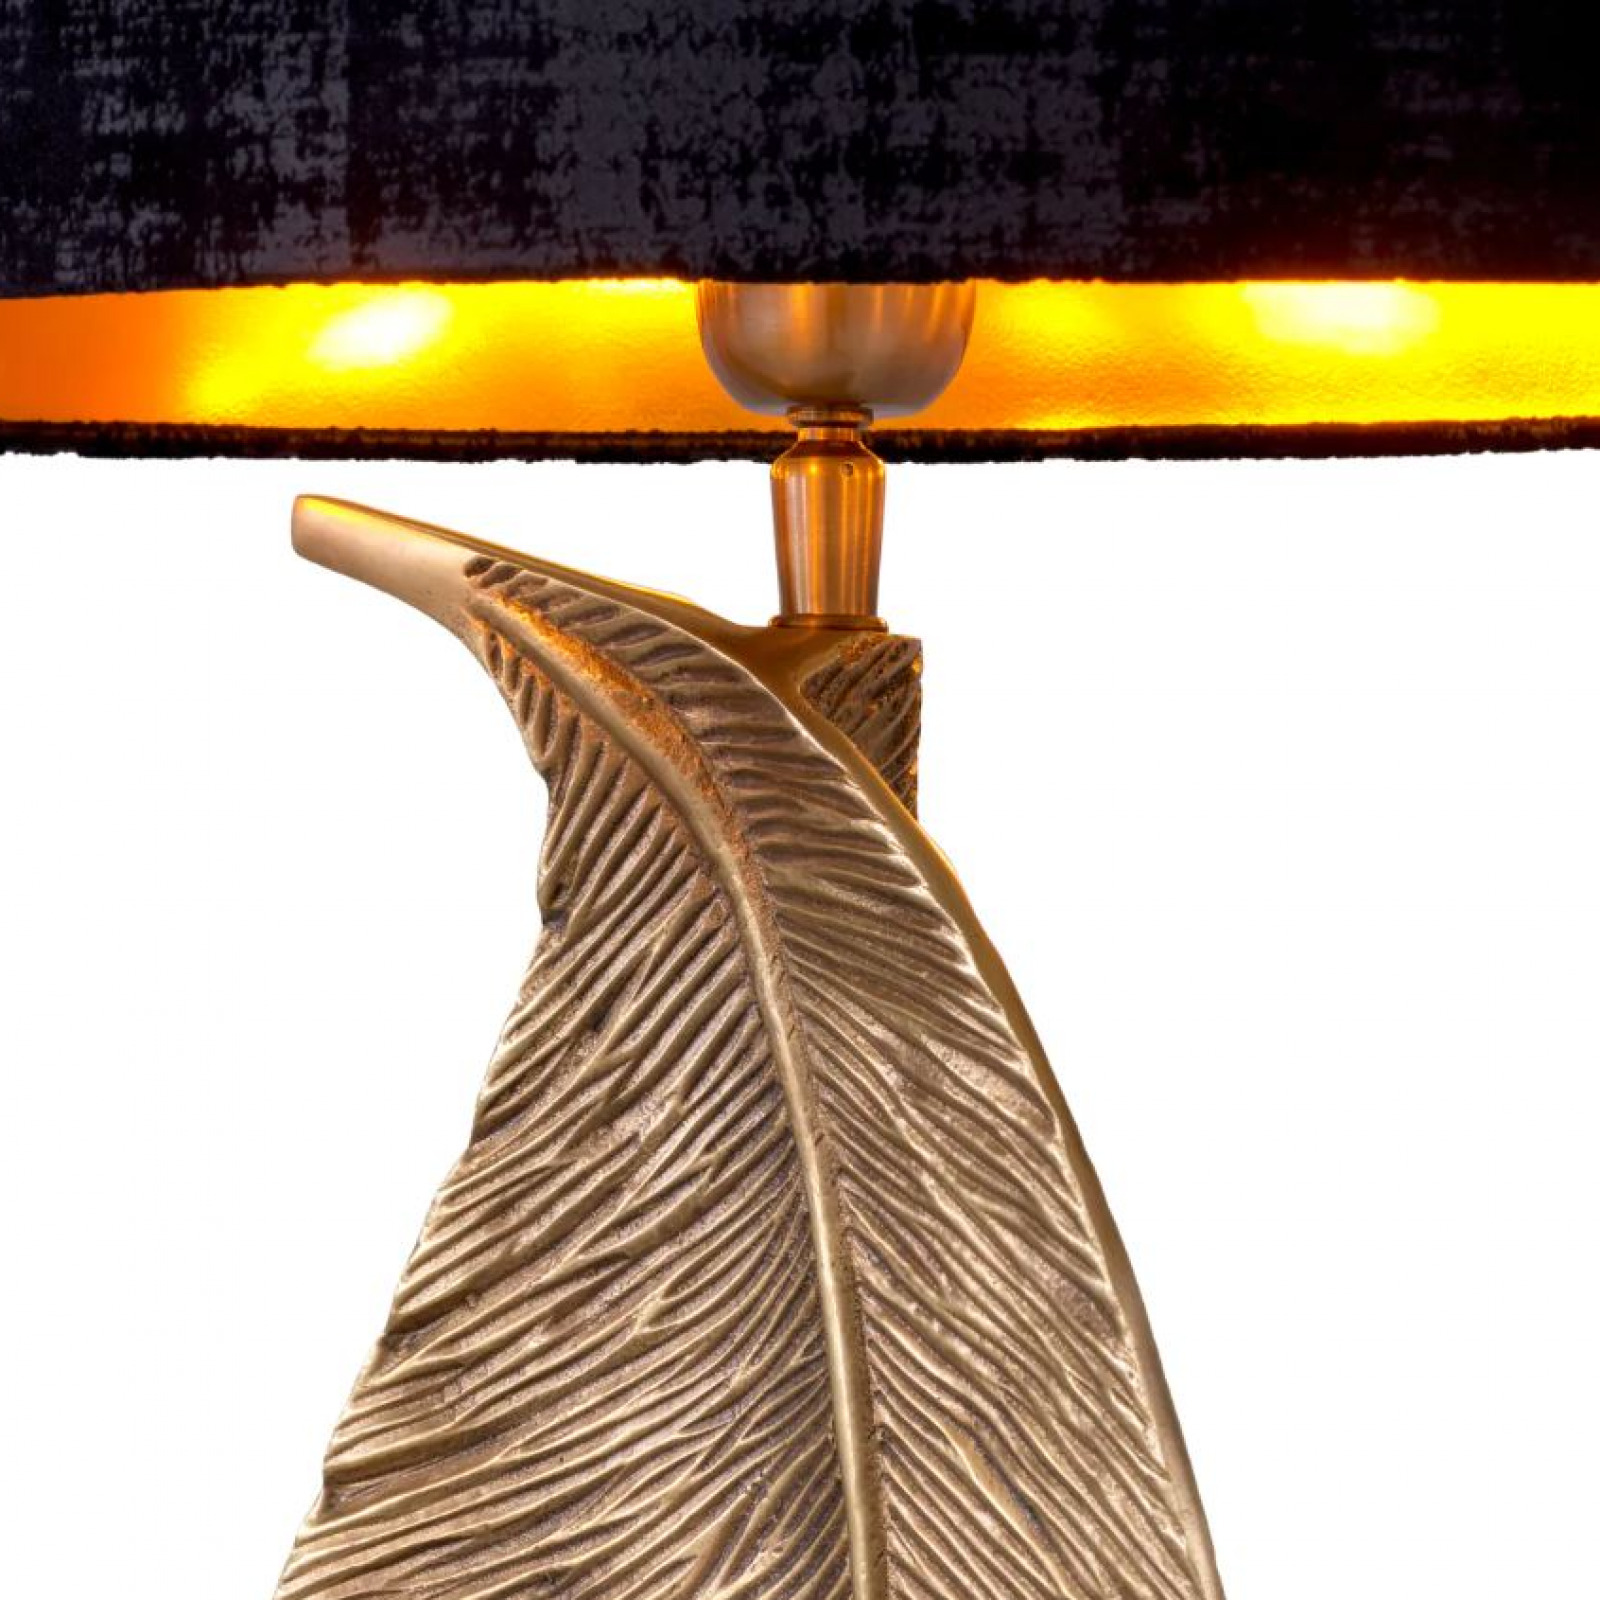 Foglia table lamp